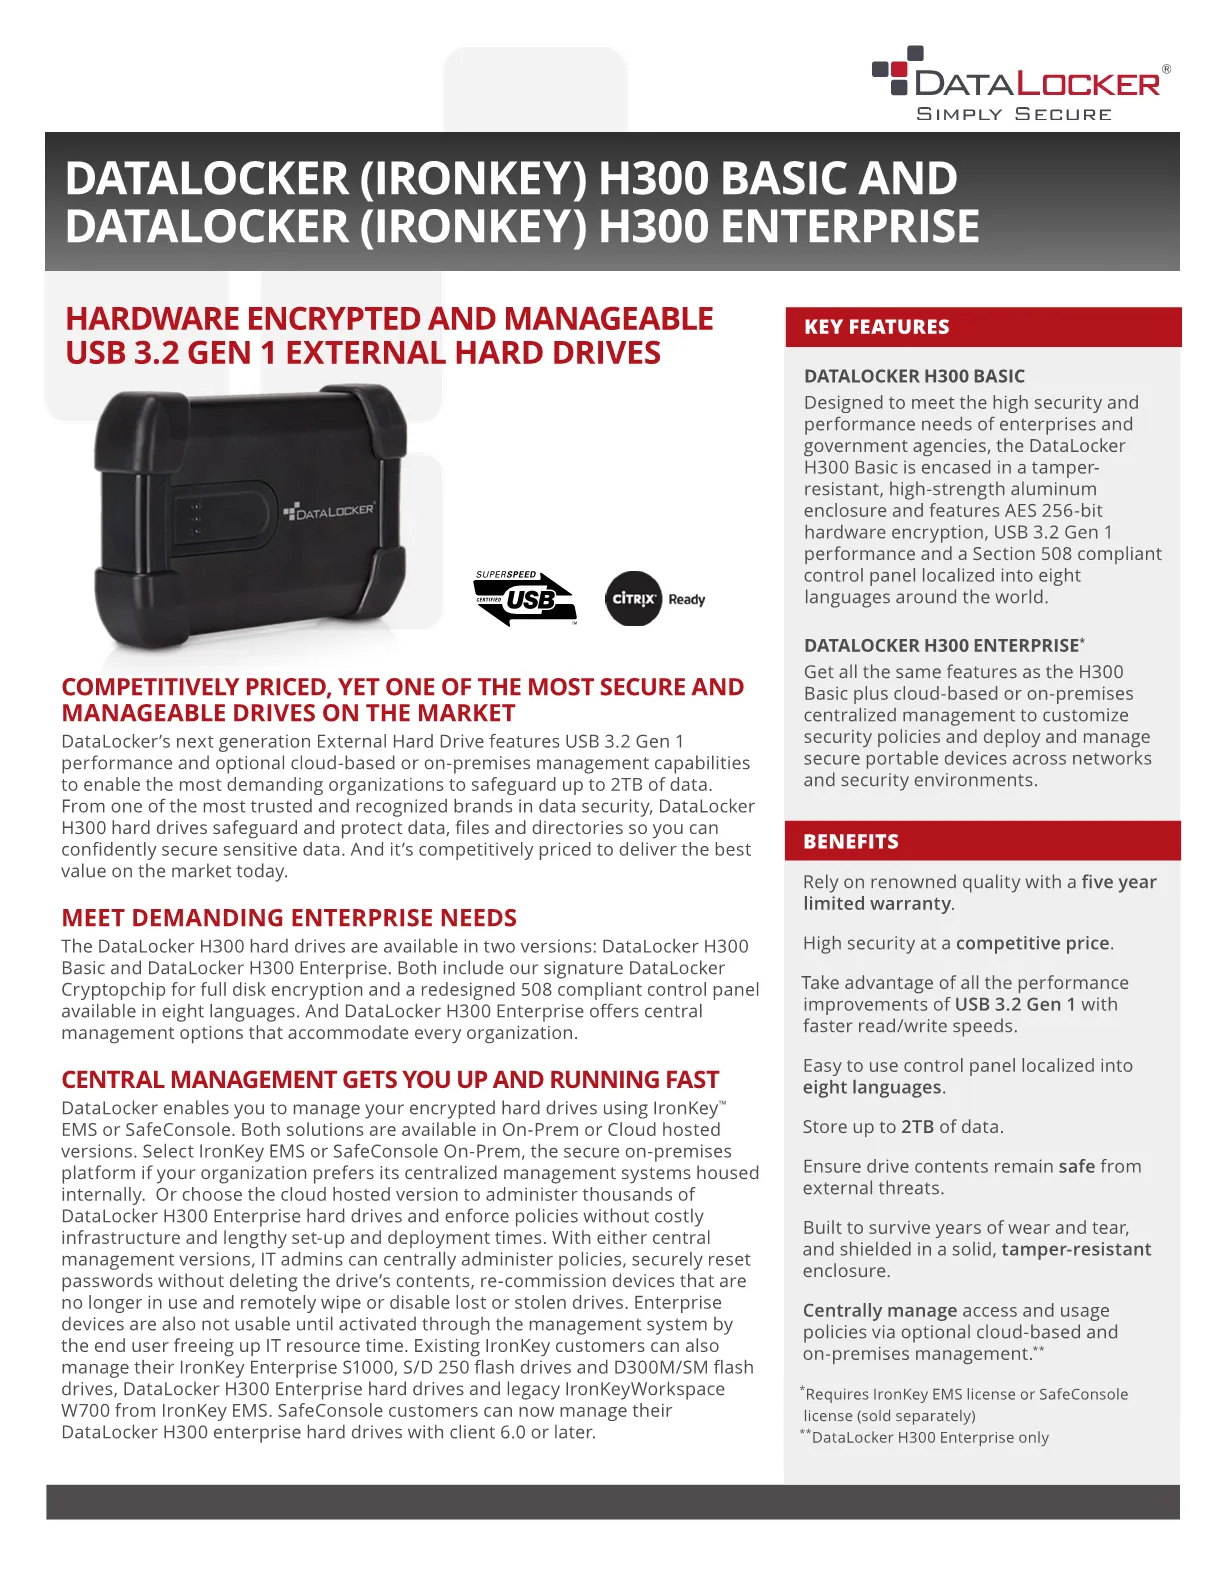 DataLocker (IronKey) H300 1TB Encrypted External Hard Drive - 3